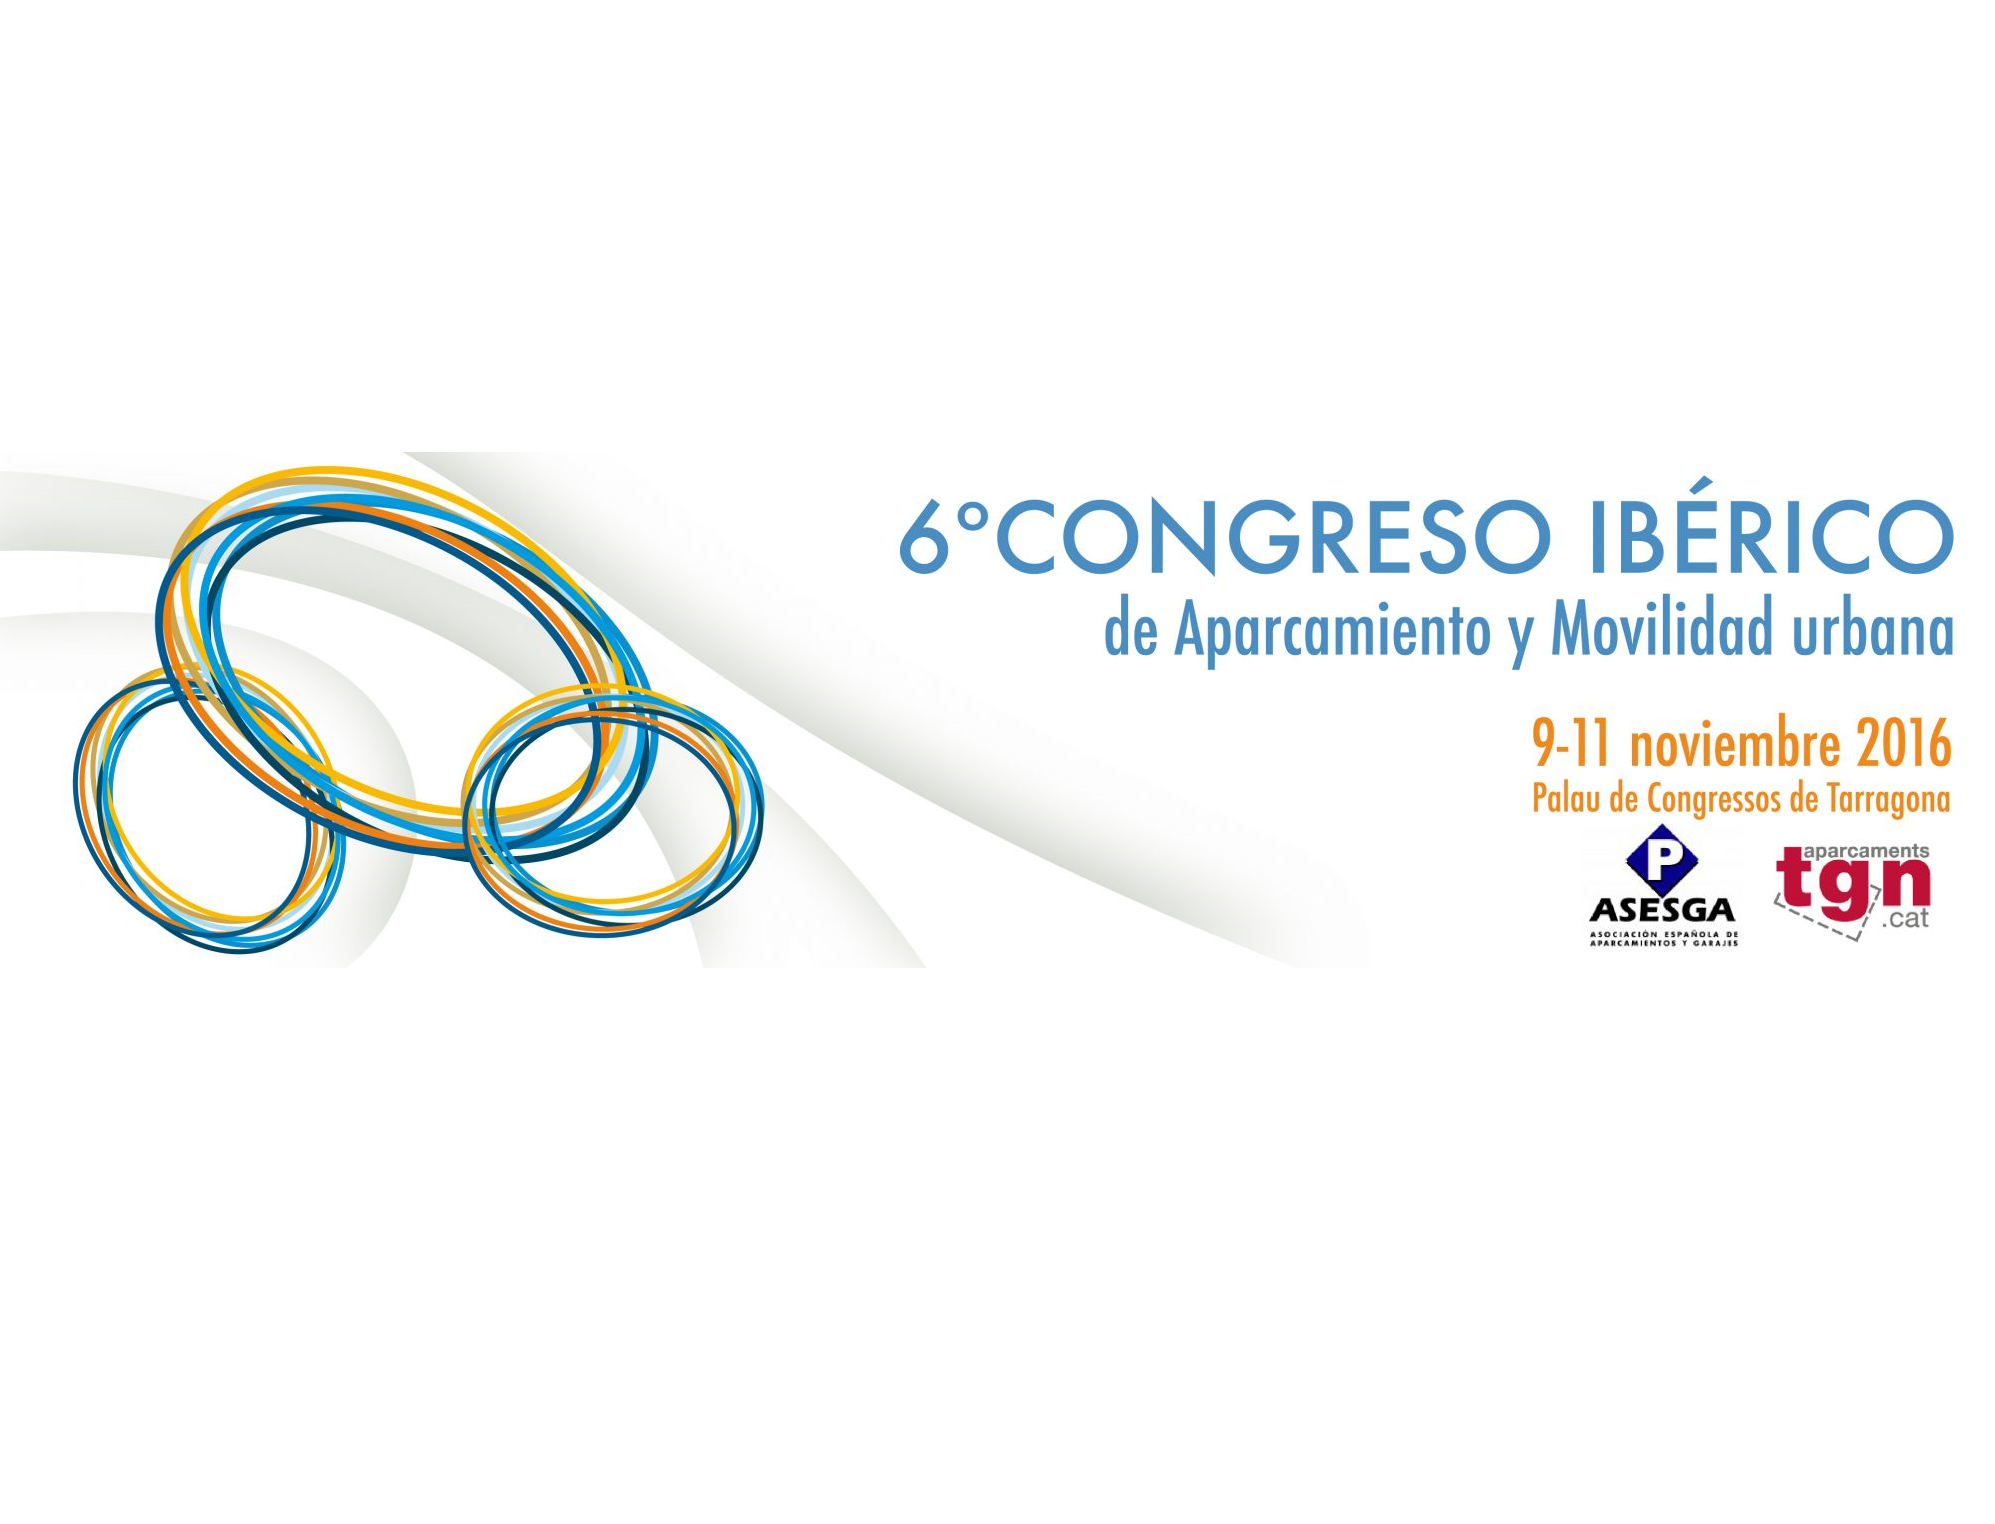 Circontrol participará en el 6º Congreso Ibérico de Aparcamientos y Movilidad Urbana organizado por ASESGA